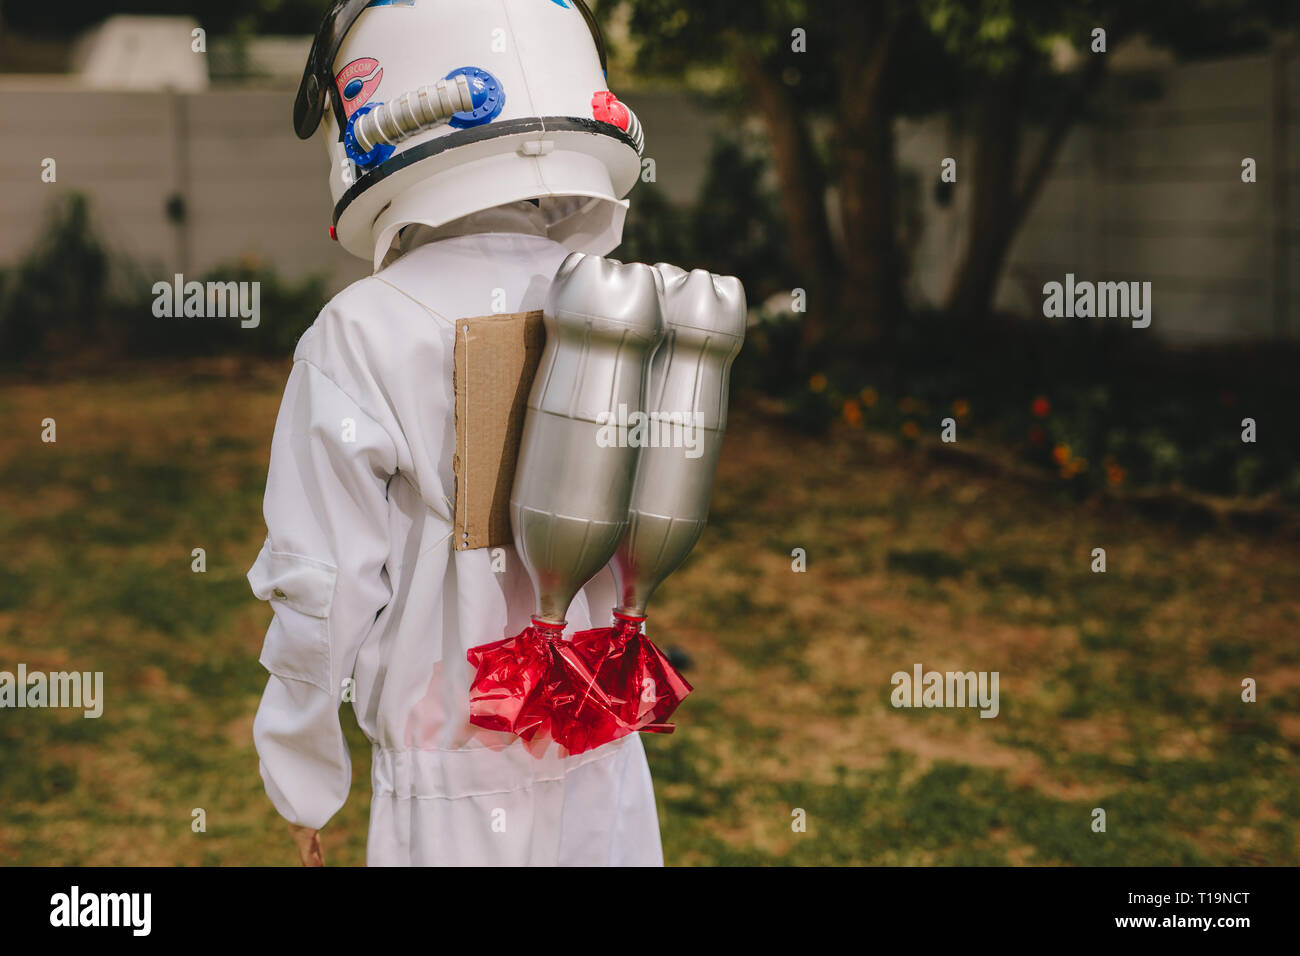 Ansicht der Rückseite des Jungen im Raum, Helm und Anzug tragen ein Spielzeug Jetpack auf dem Rücken. Junge vorgibt, ein Astronaut zu Spielen im Freien. Stockfoto